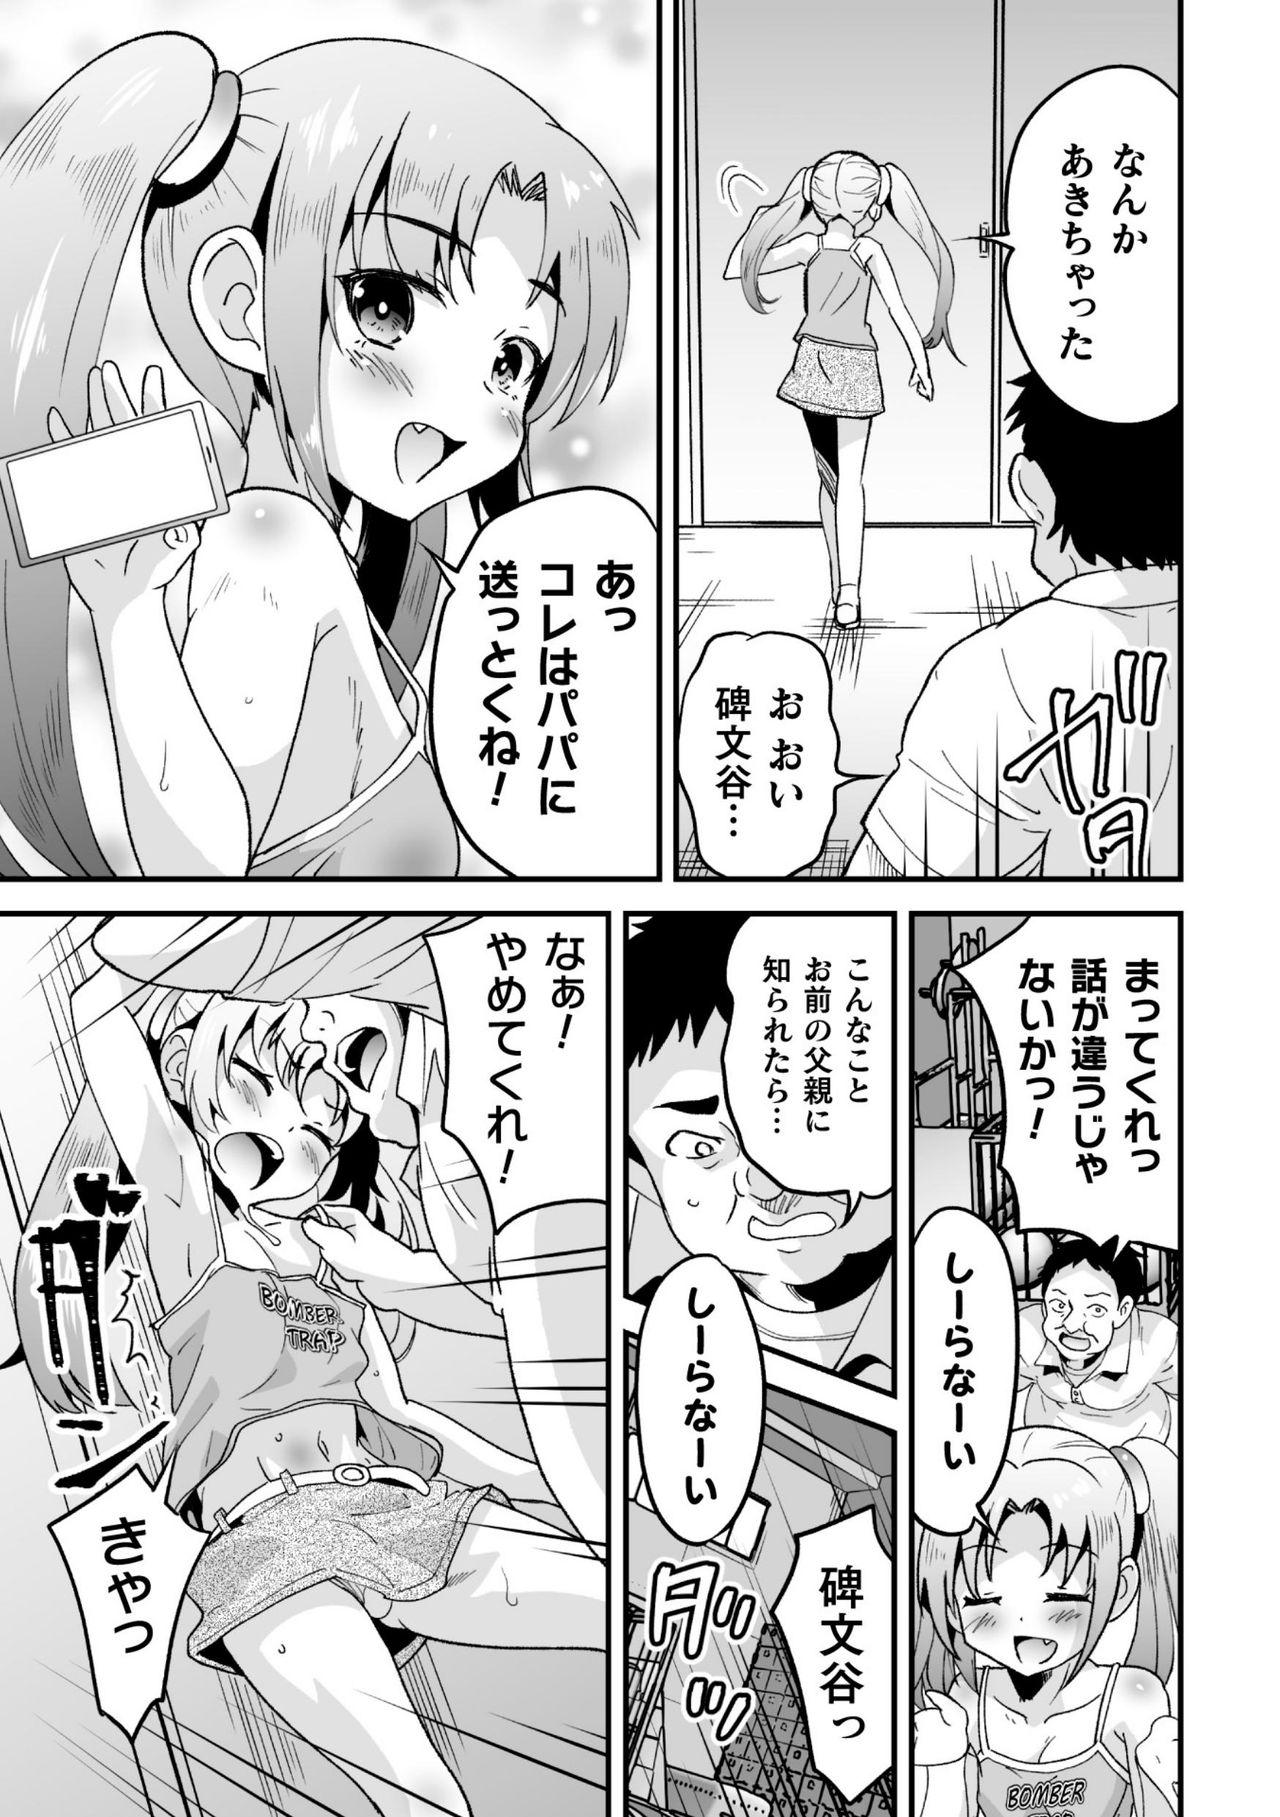 2D Comic Magazine Mesugaki Otokonoko Seisai Ikiru Shiriana o Wakarase Bou de Goshidou Gobentatsu! Vol. 2 48